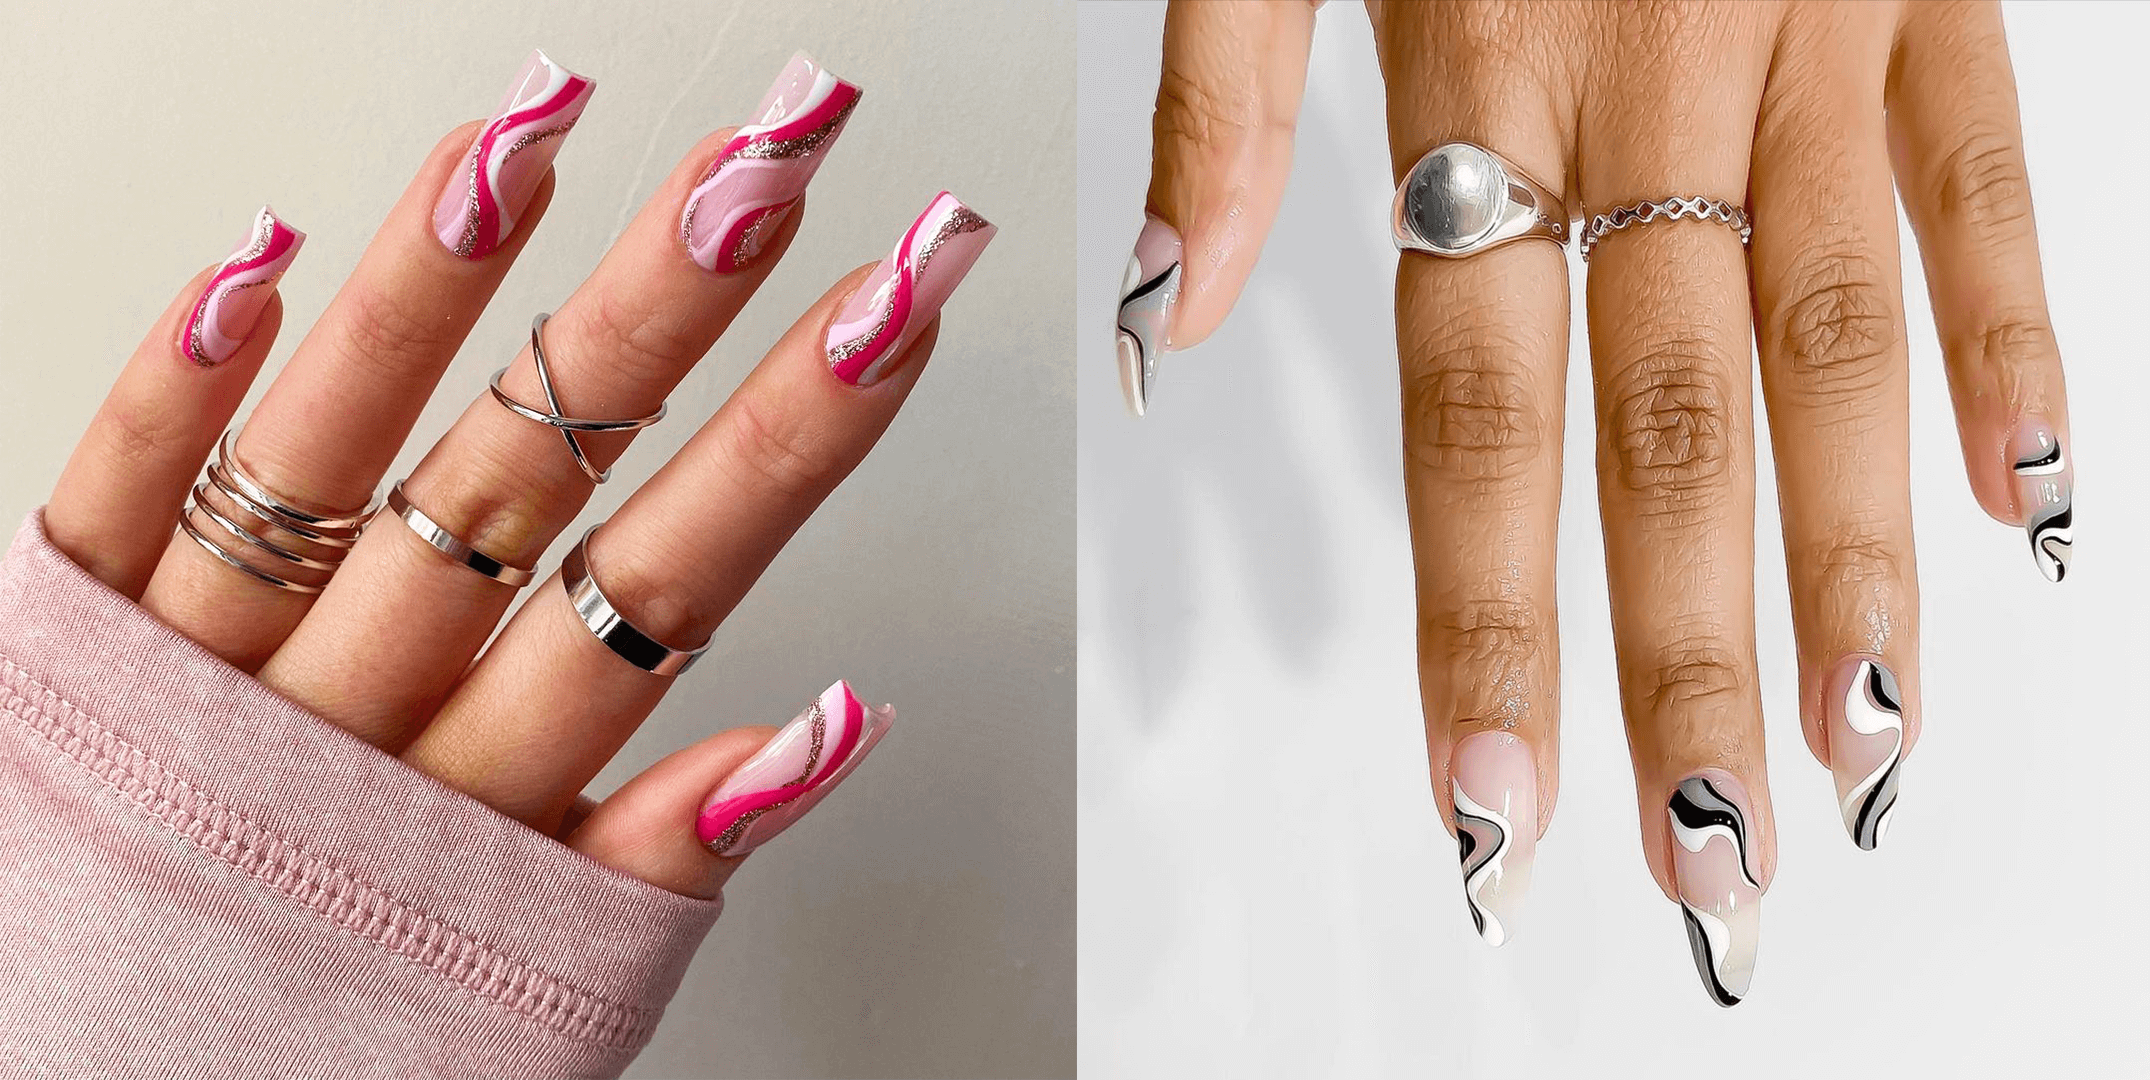 Wavy acrylic nails